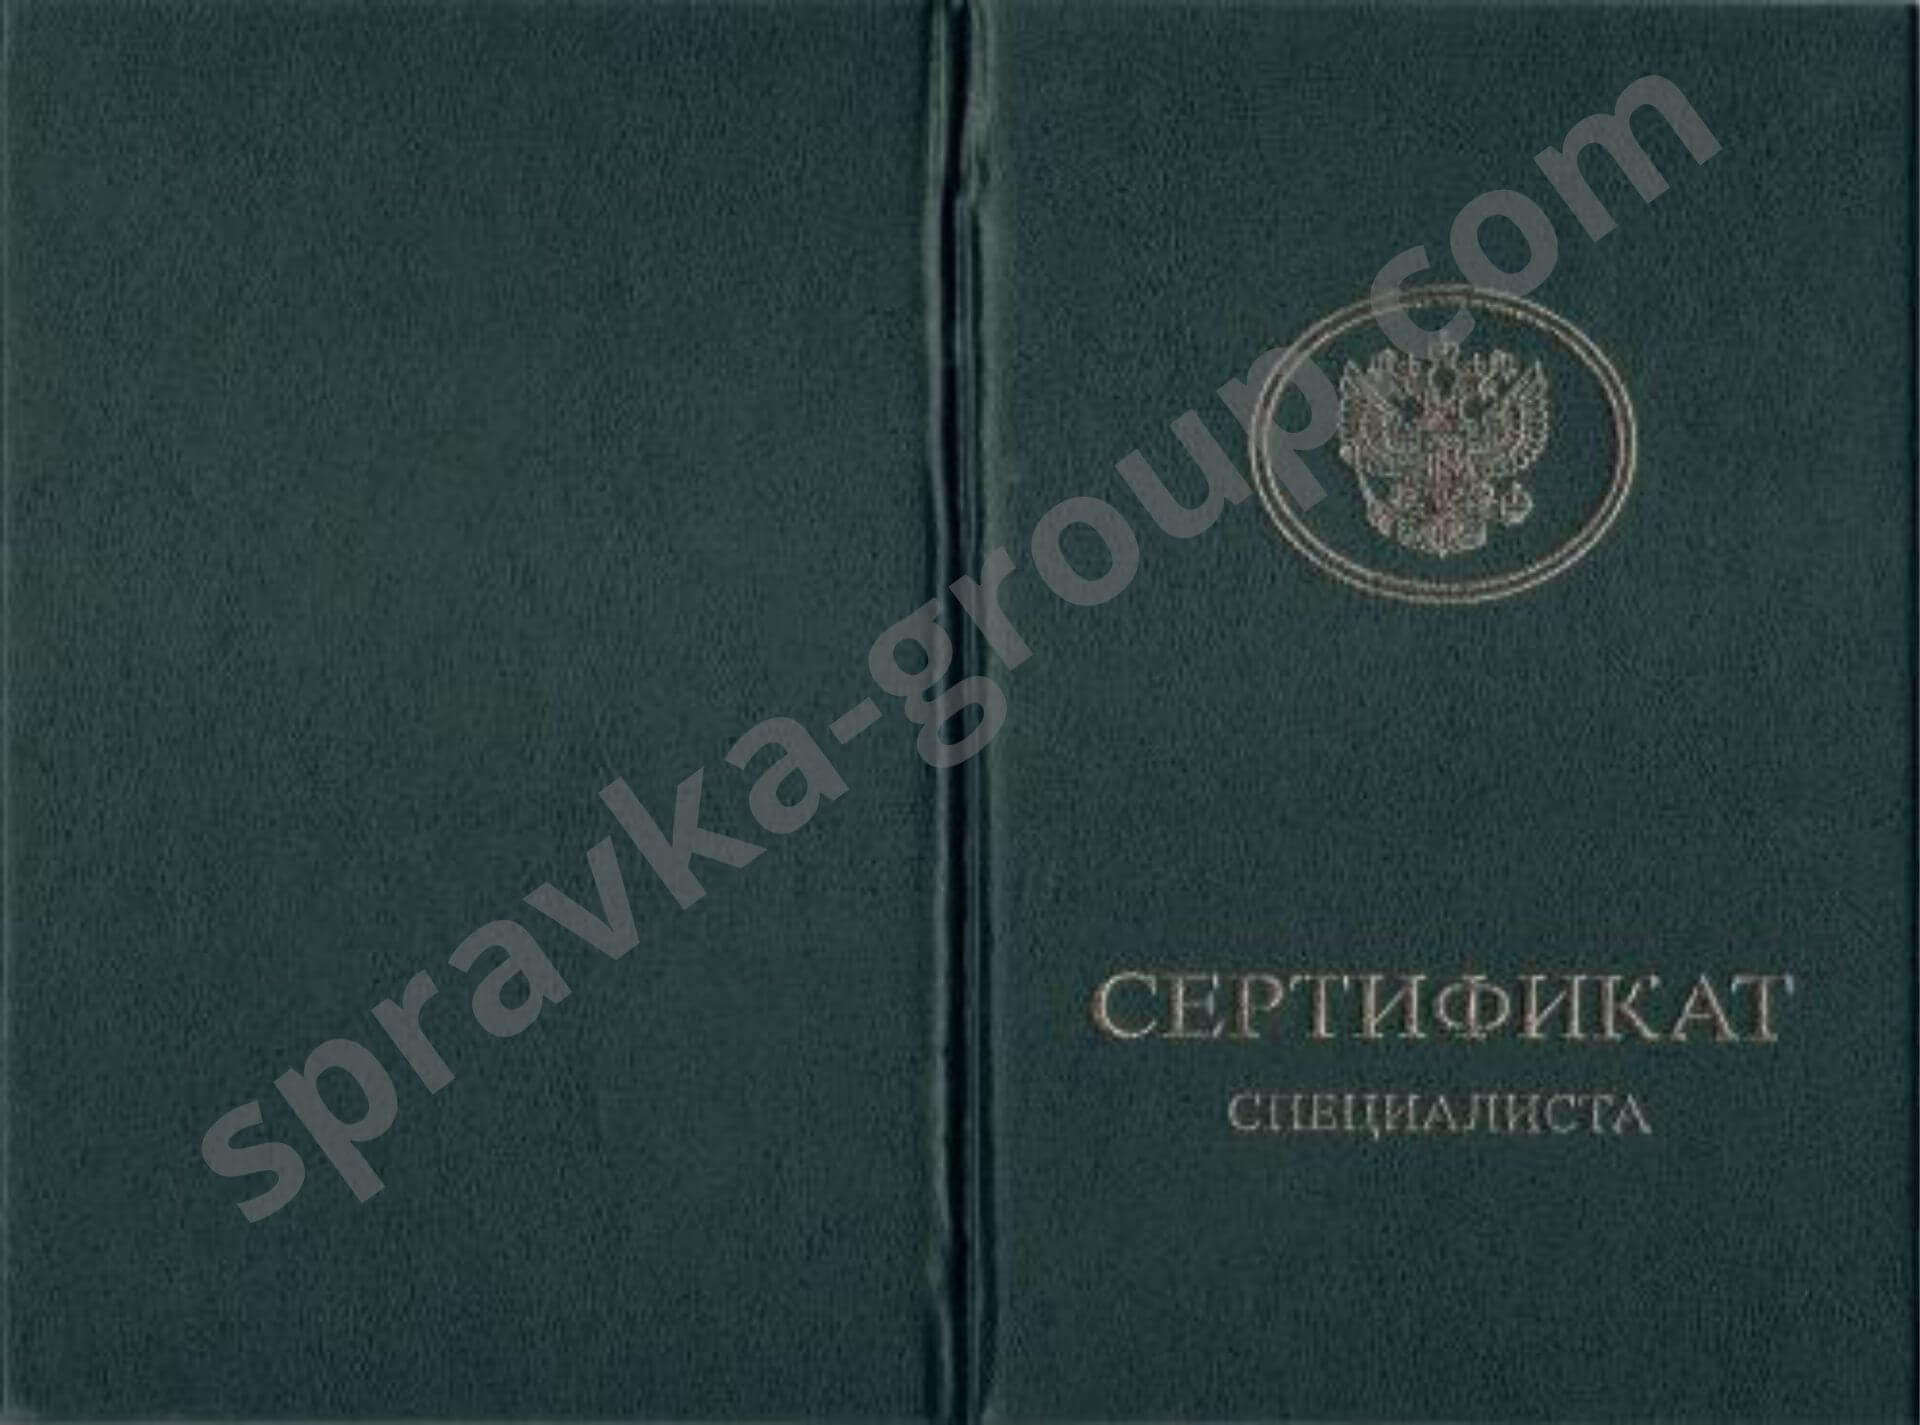 Купить сертификат фармацевта цены в Москве, фото №3